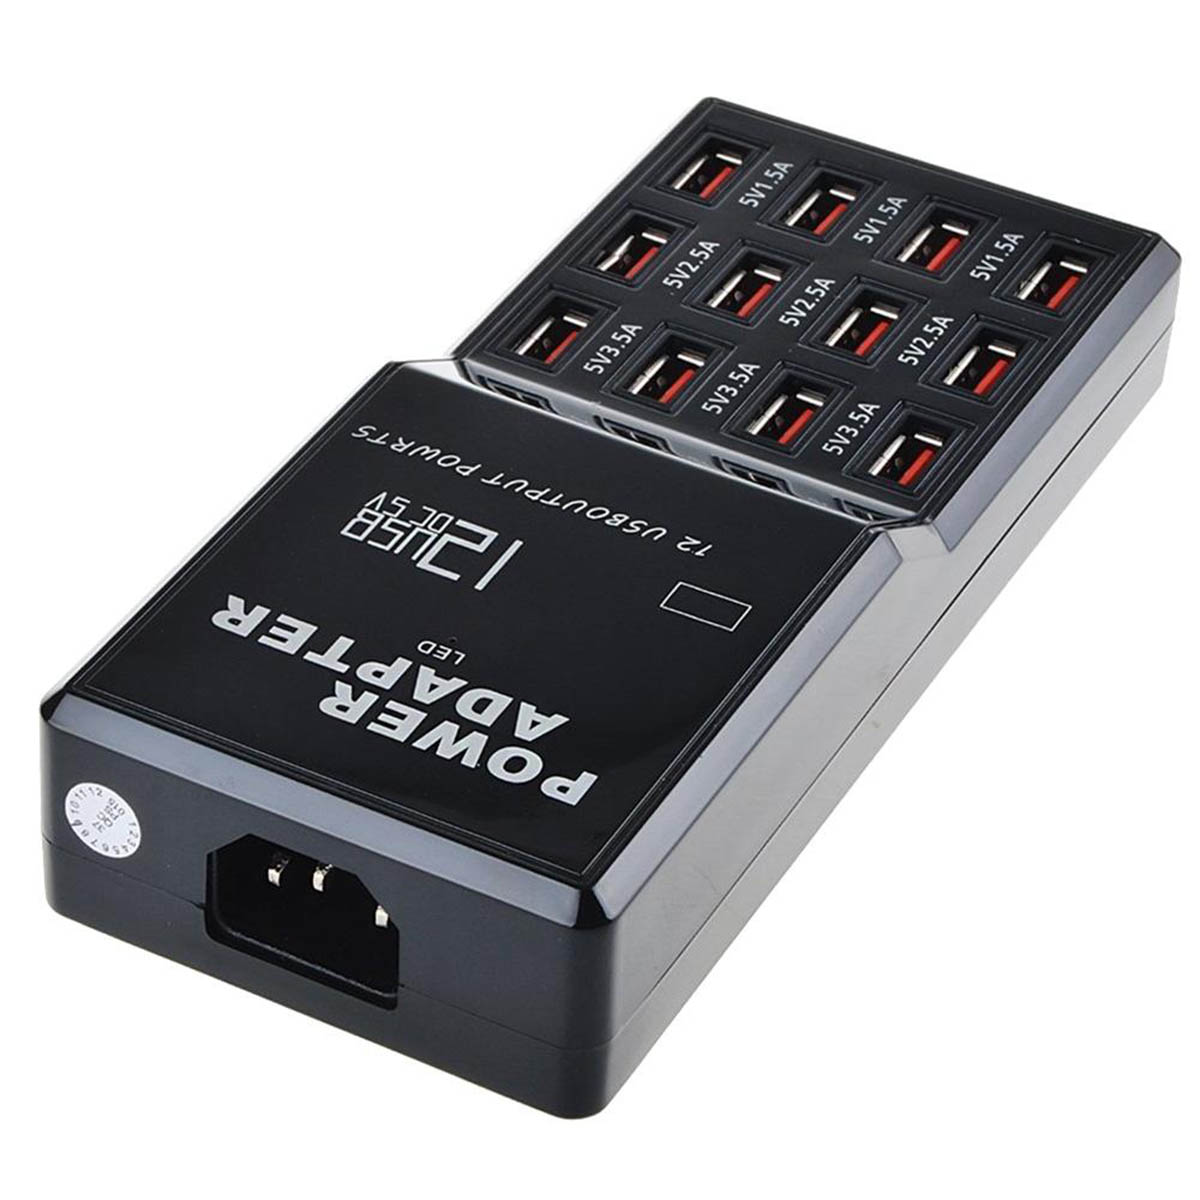 СЗУ (Сетевое зарядное устройство) W-858, 12 портов, цвет черный